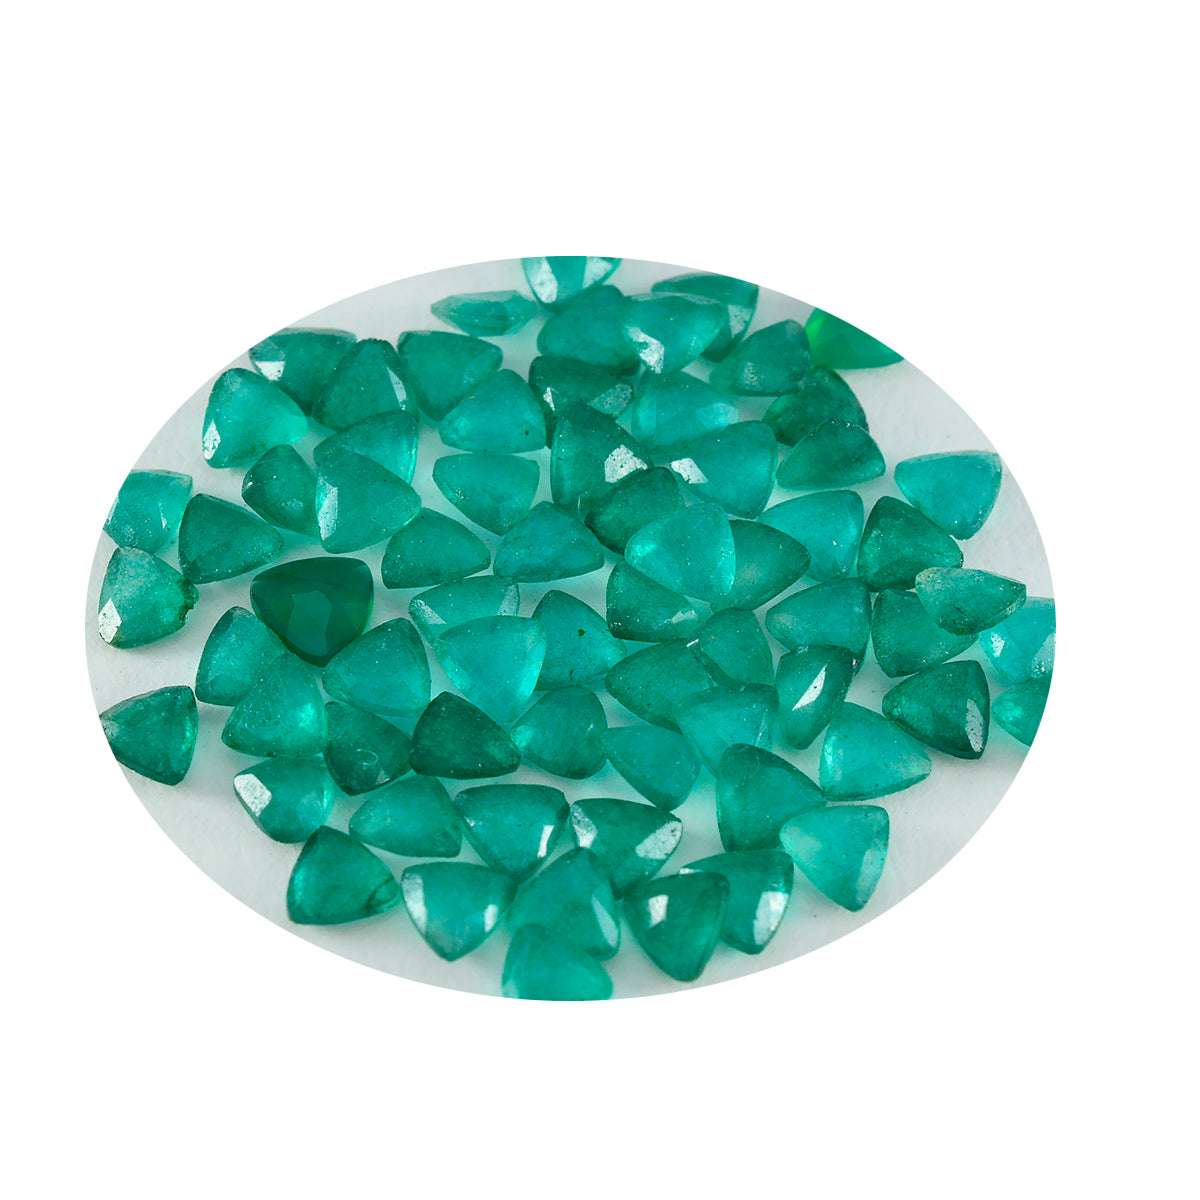 riyogems 1шт настоящая зеленая яшма ограненная 5x5 мм форма триллиона +1 драгоценный камень качества